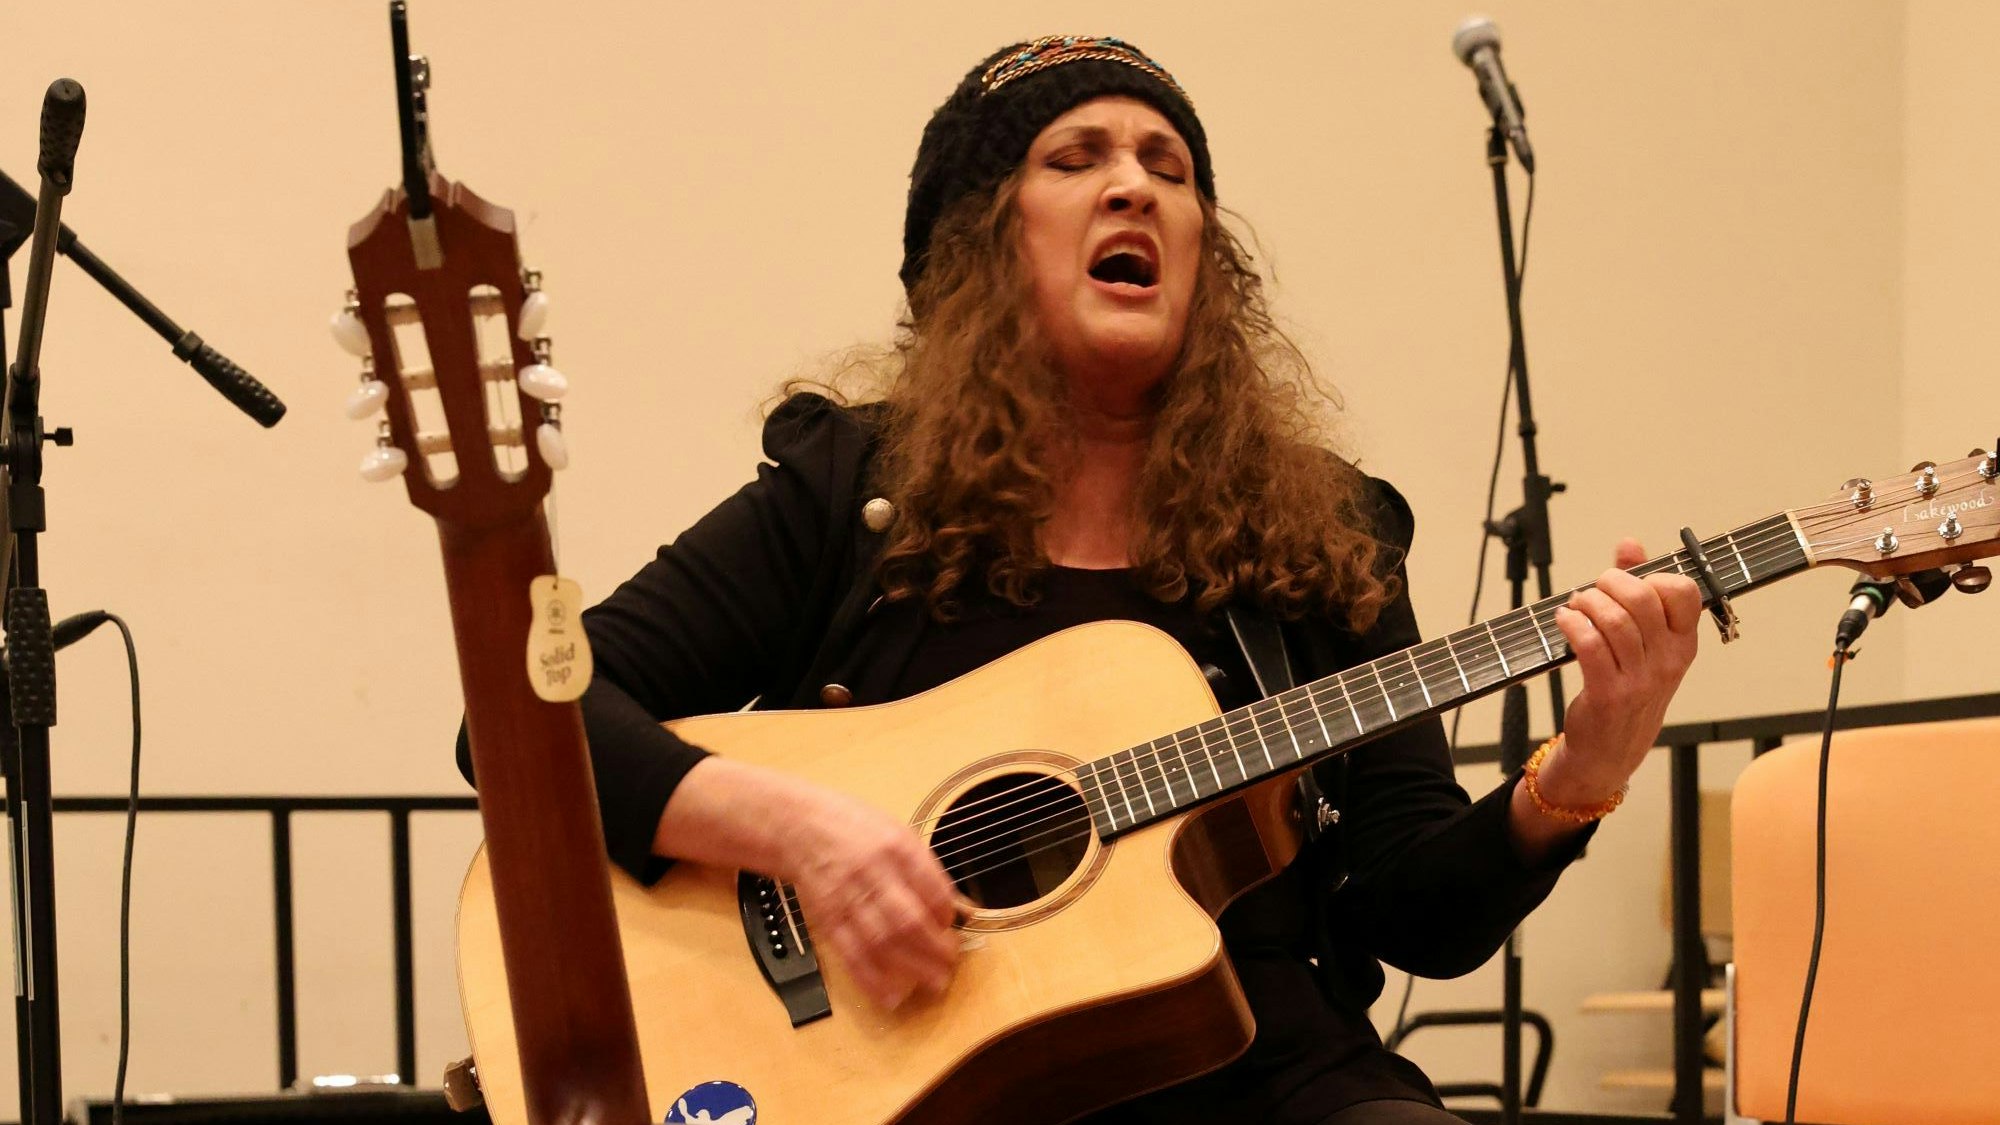 Eine Frau singt und spielt Gitarre.